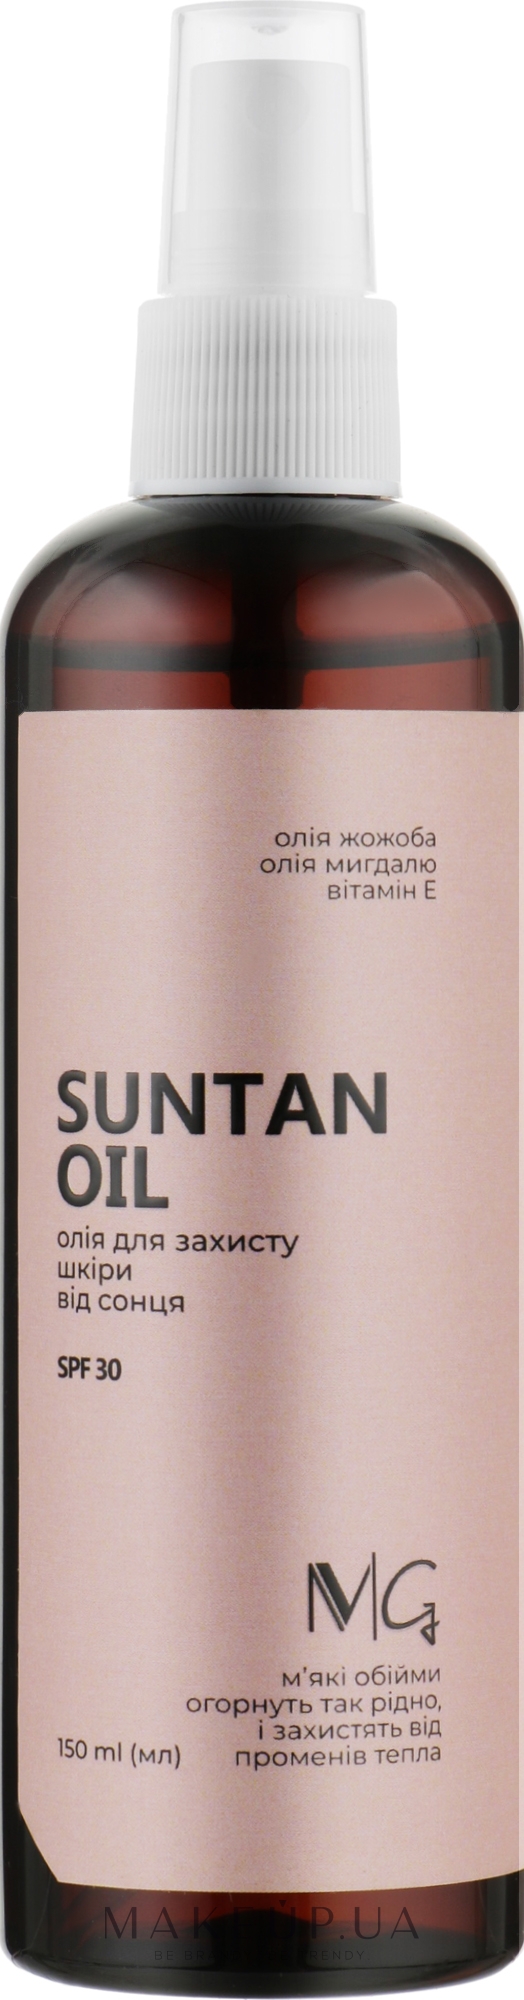 Масло для защиты тела от солнца - MG Suntan Oil SPF30 — фото 150ml